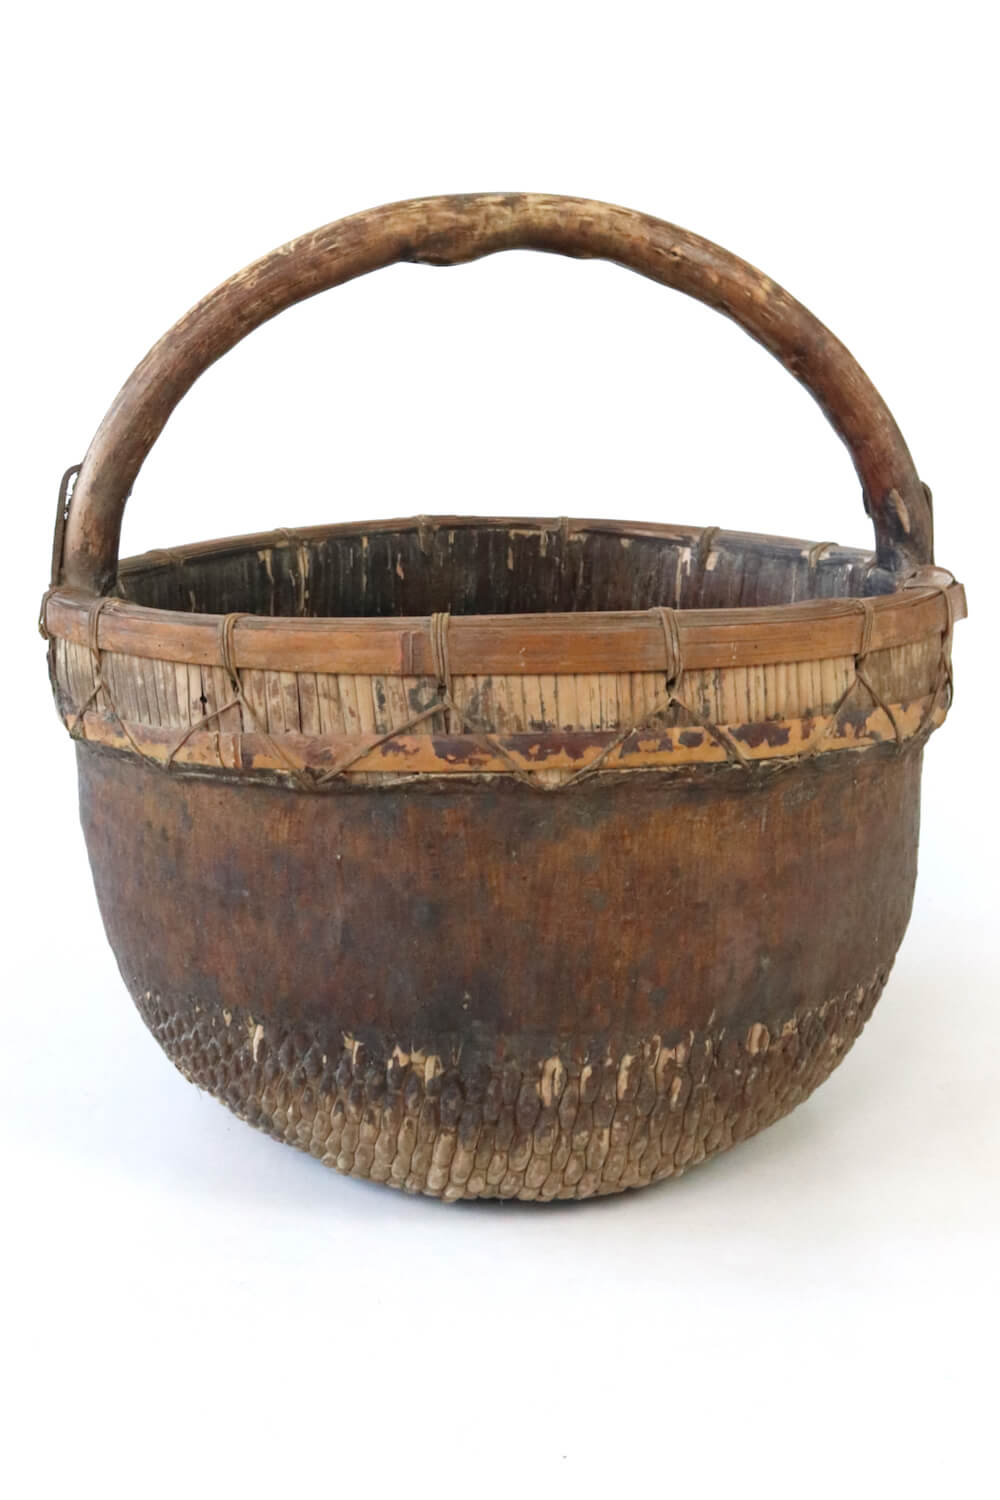 reed basket CHina antique